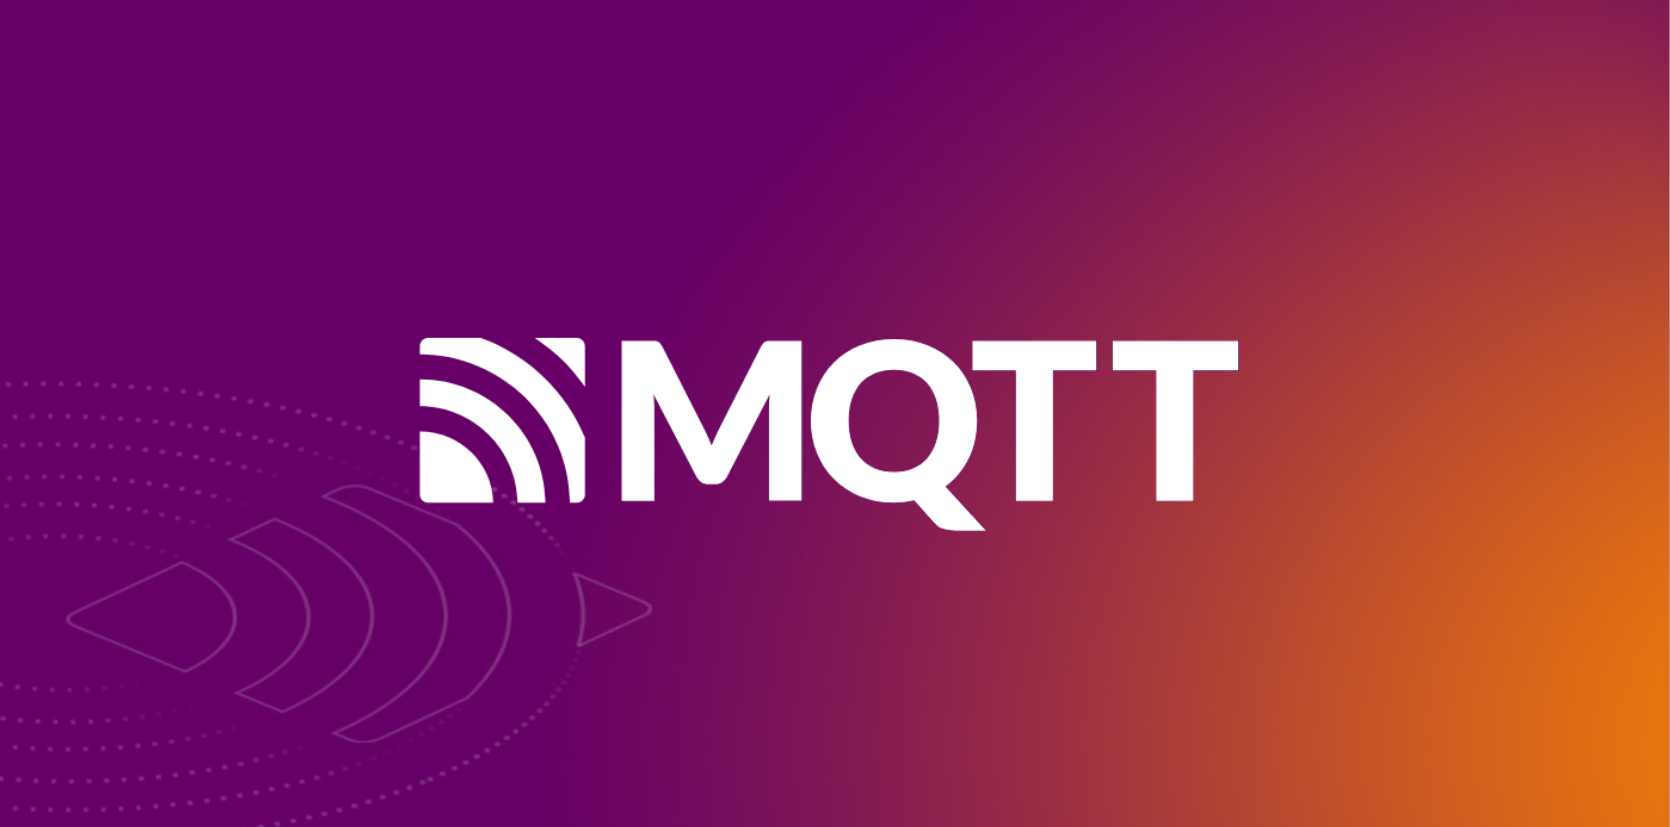 MQTT とそのアプリケーションとは何ですか?